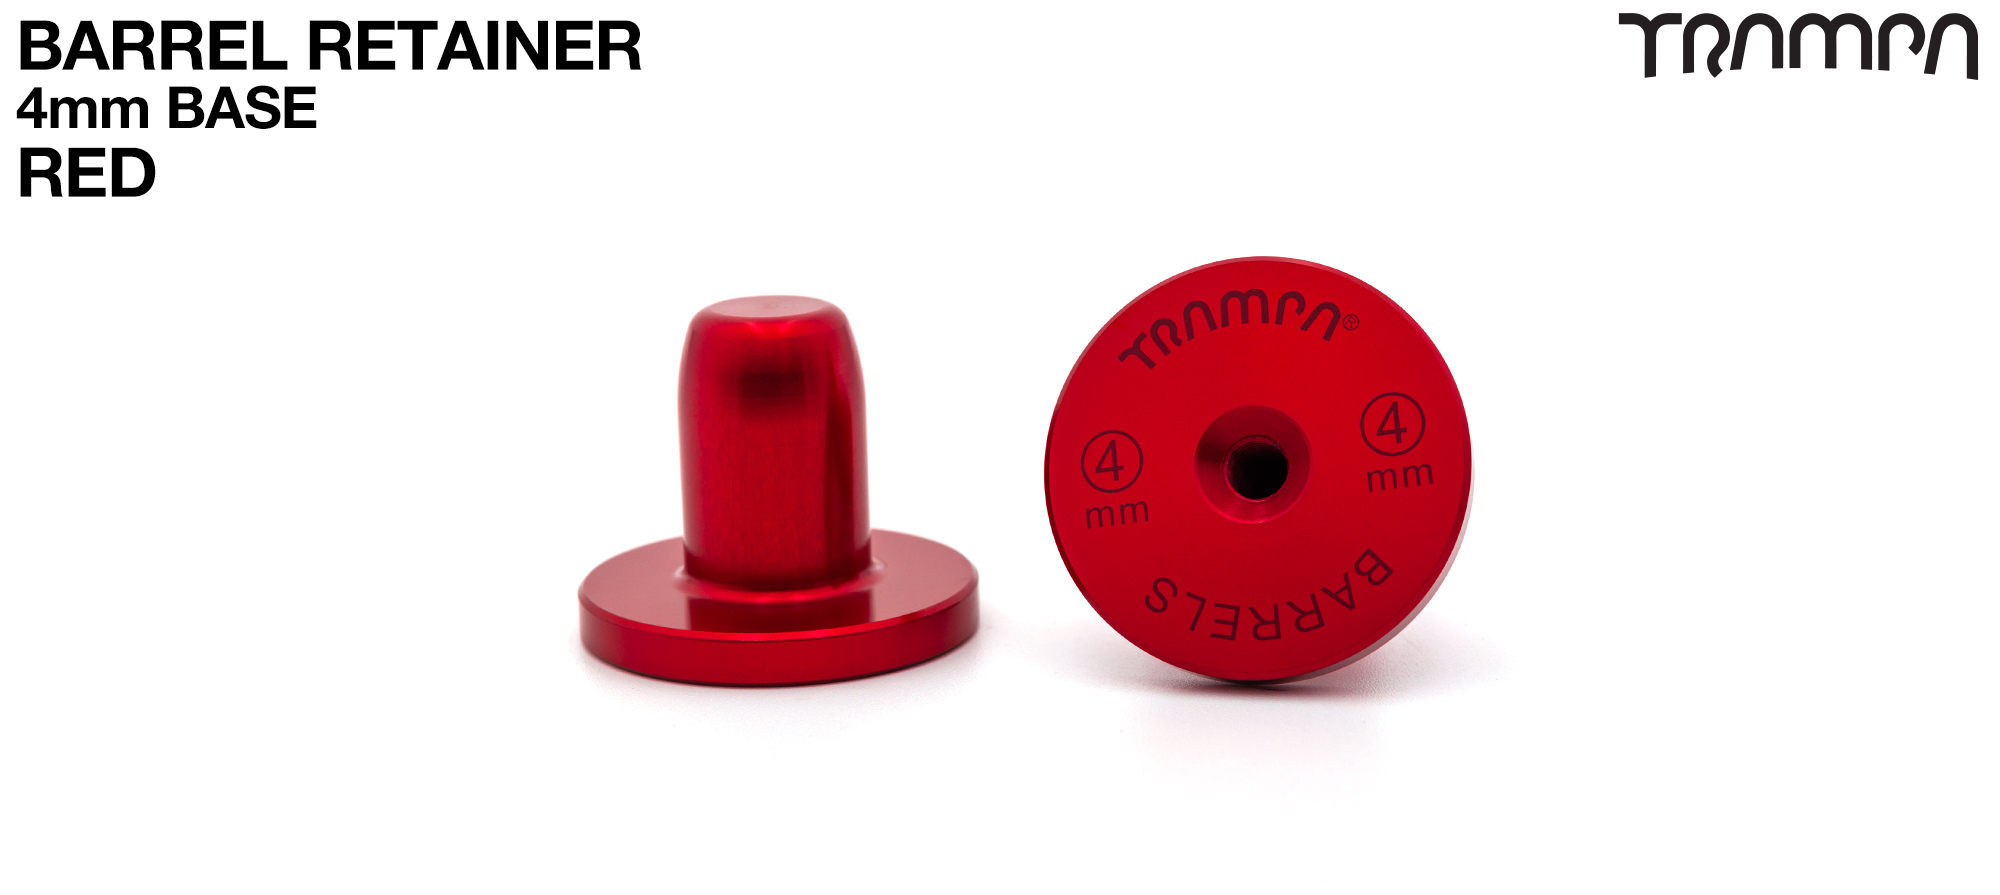 BARRELS Retainer 4mm BASE - RED